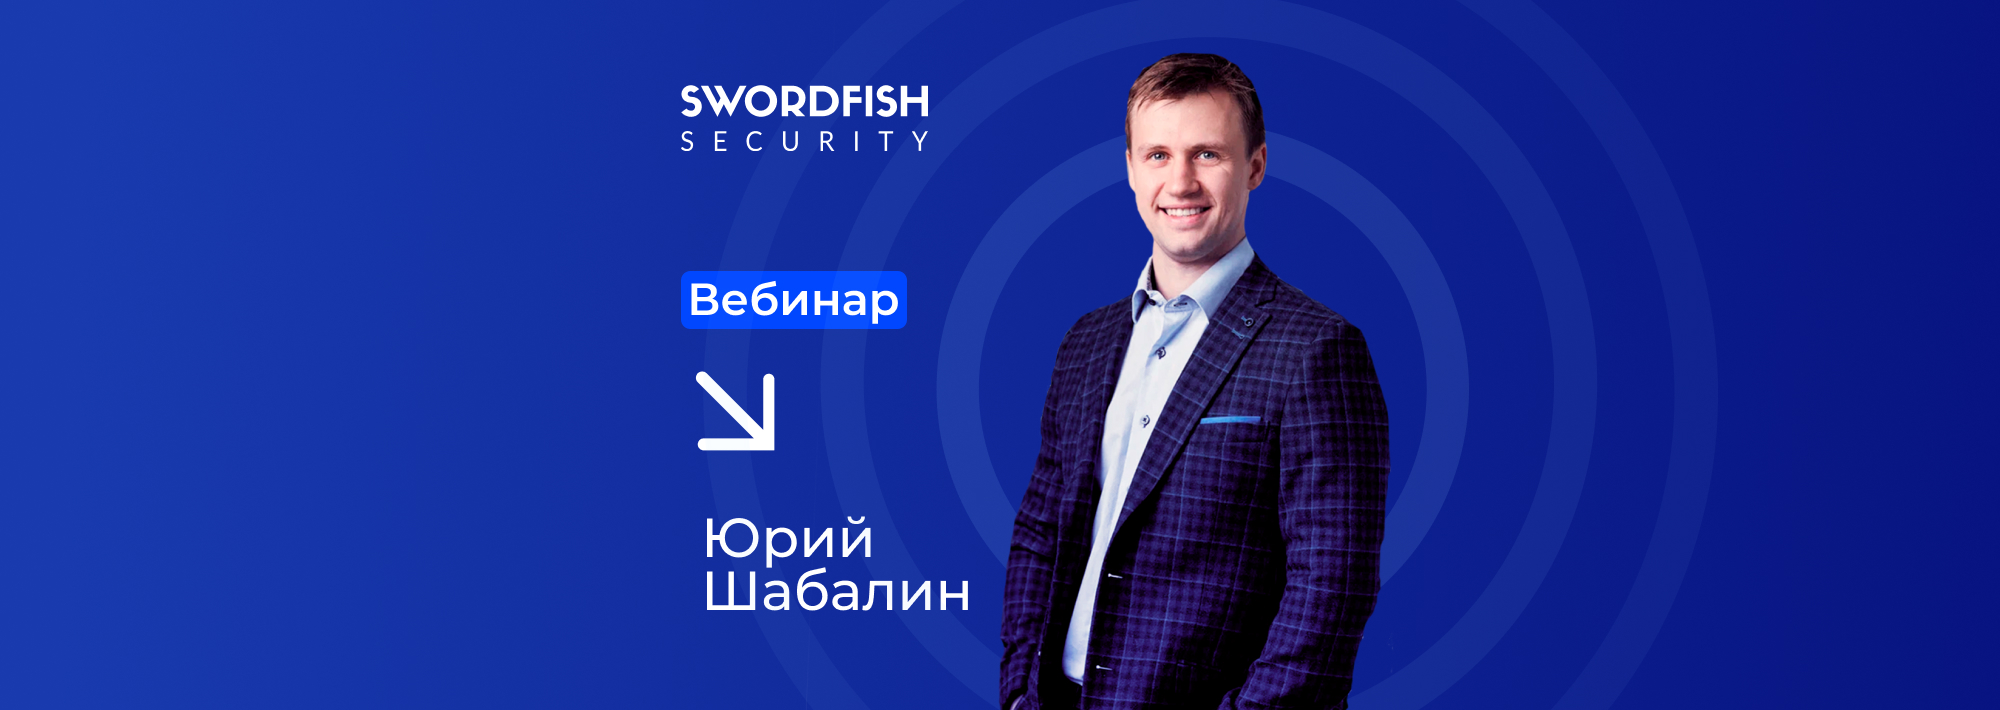 Эксперт Swordfish Security запустил спринт по безопасности мобильных приложений на платформе Код ИБ